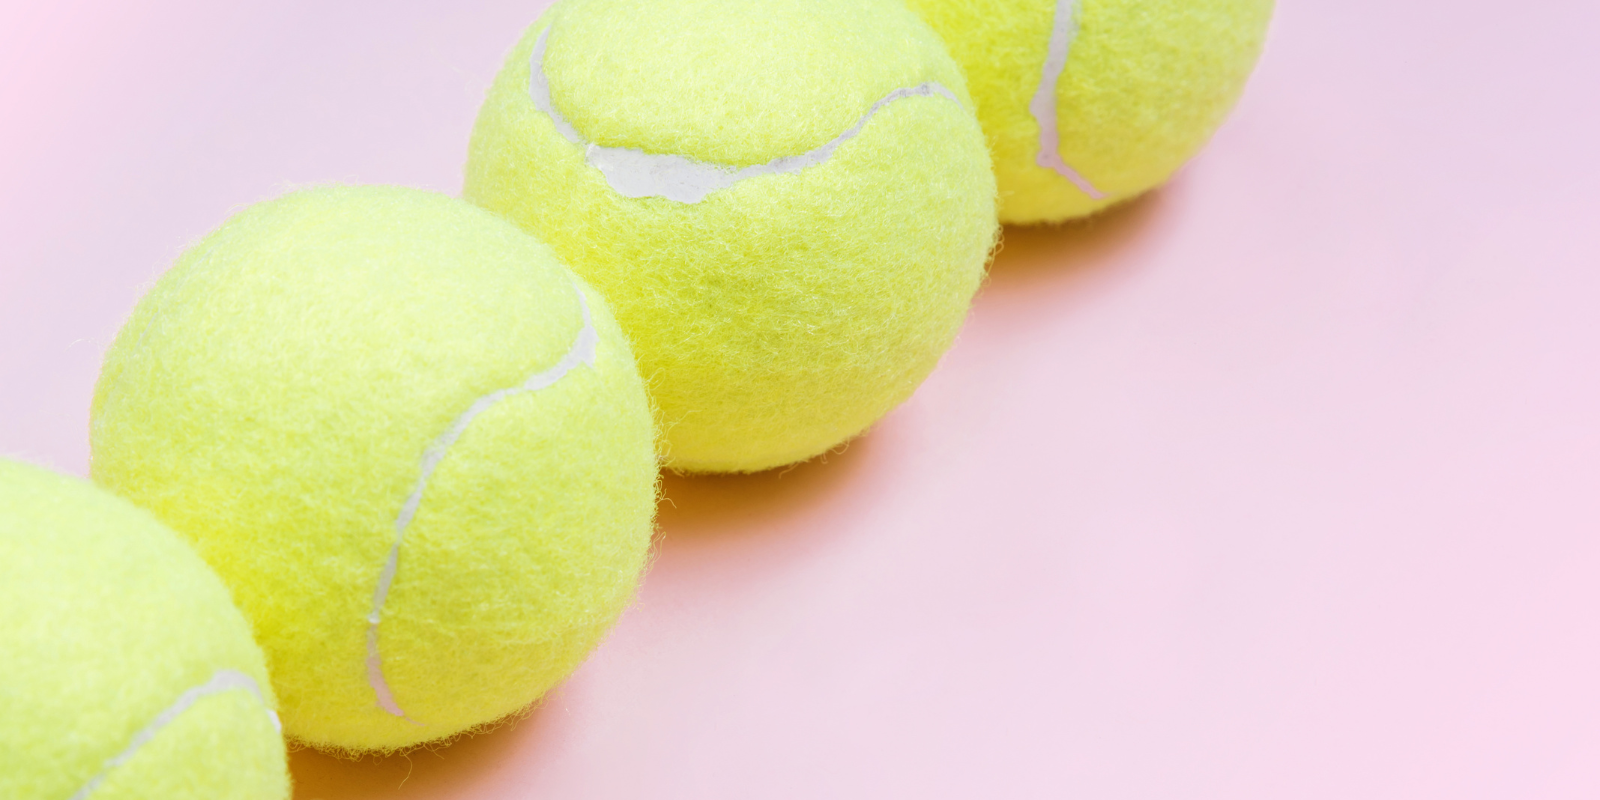 Beginnen met tennis: de ultieme mix van plezier en uitdaging